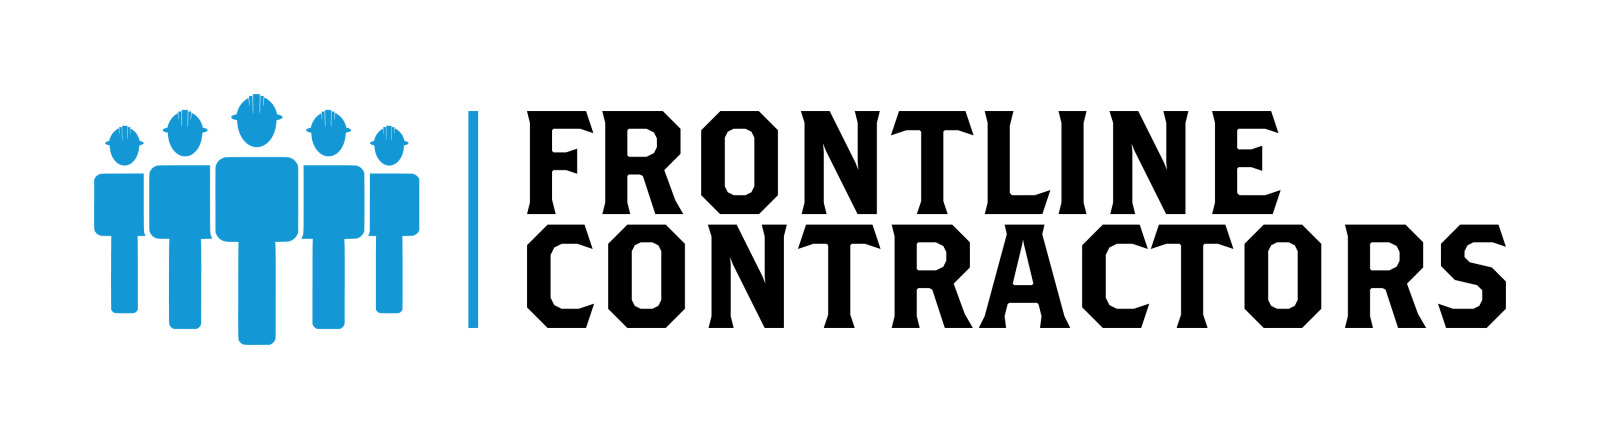 Frontline Contractors LLC